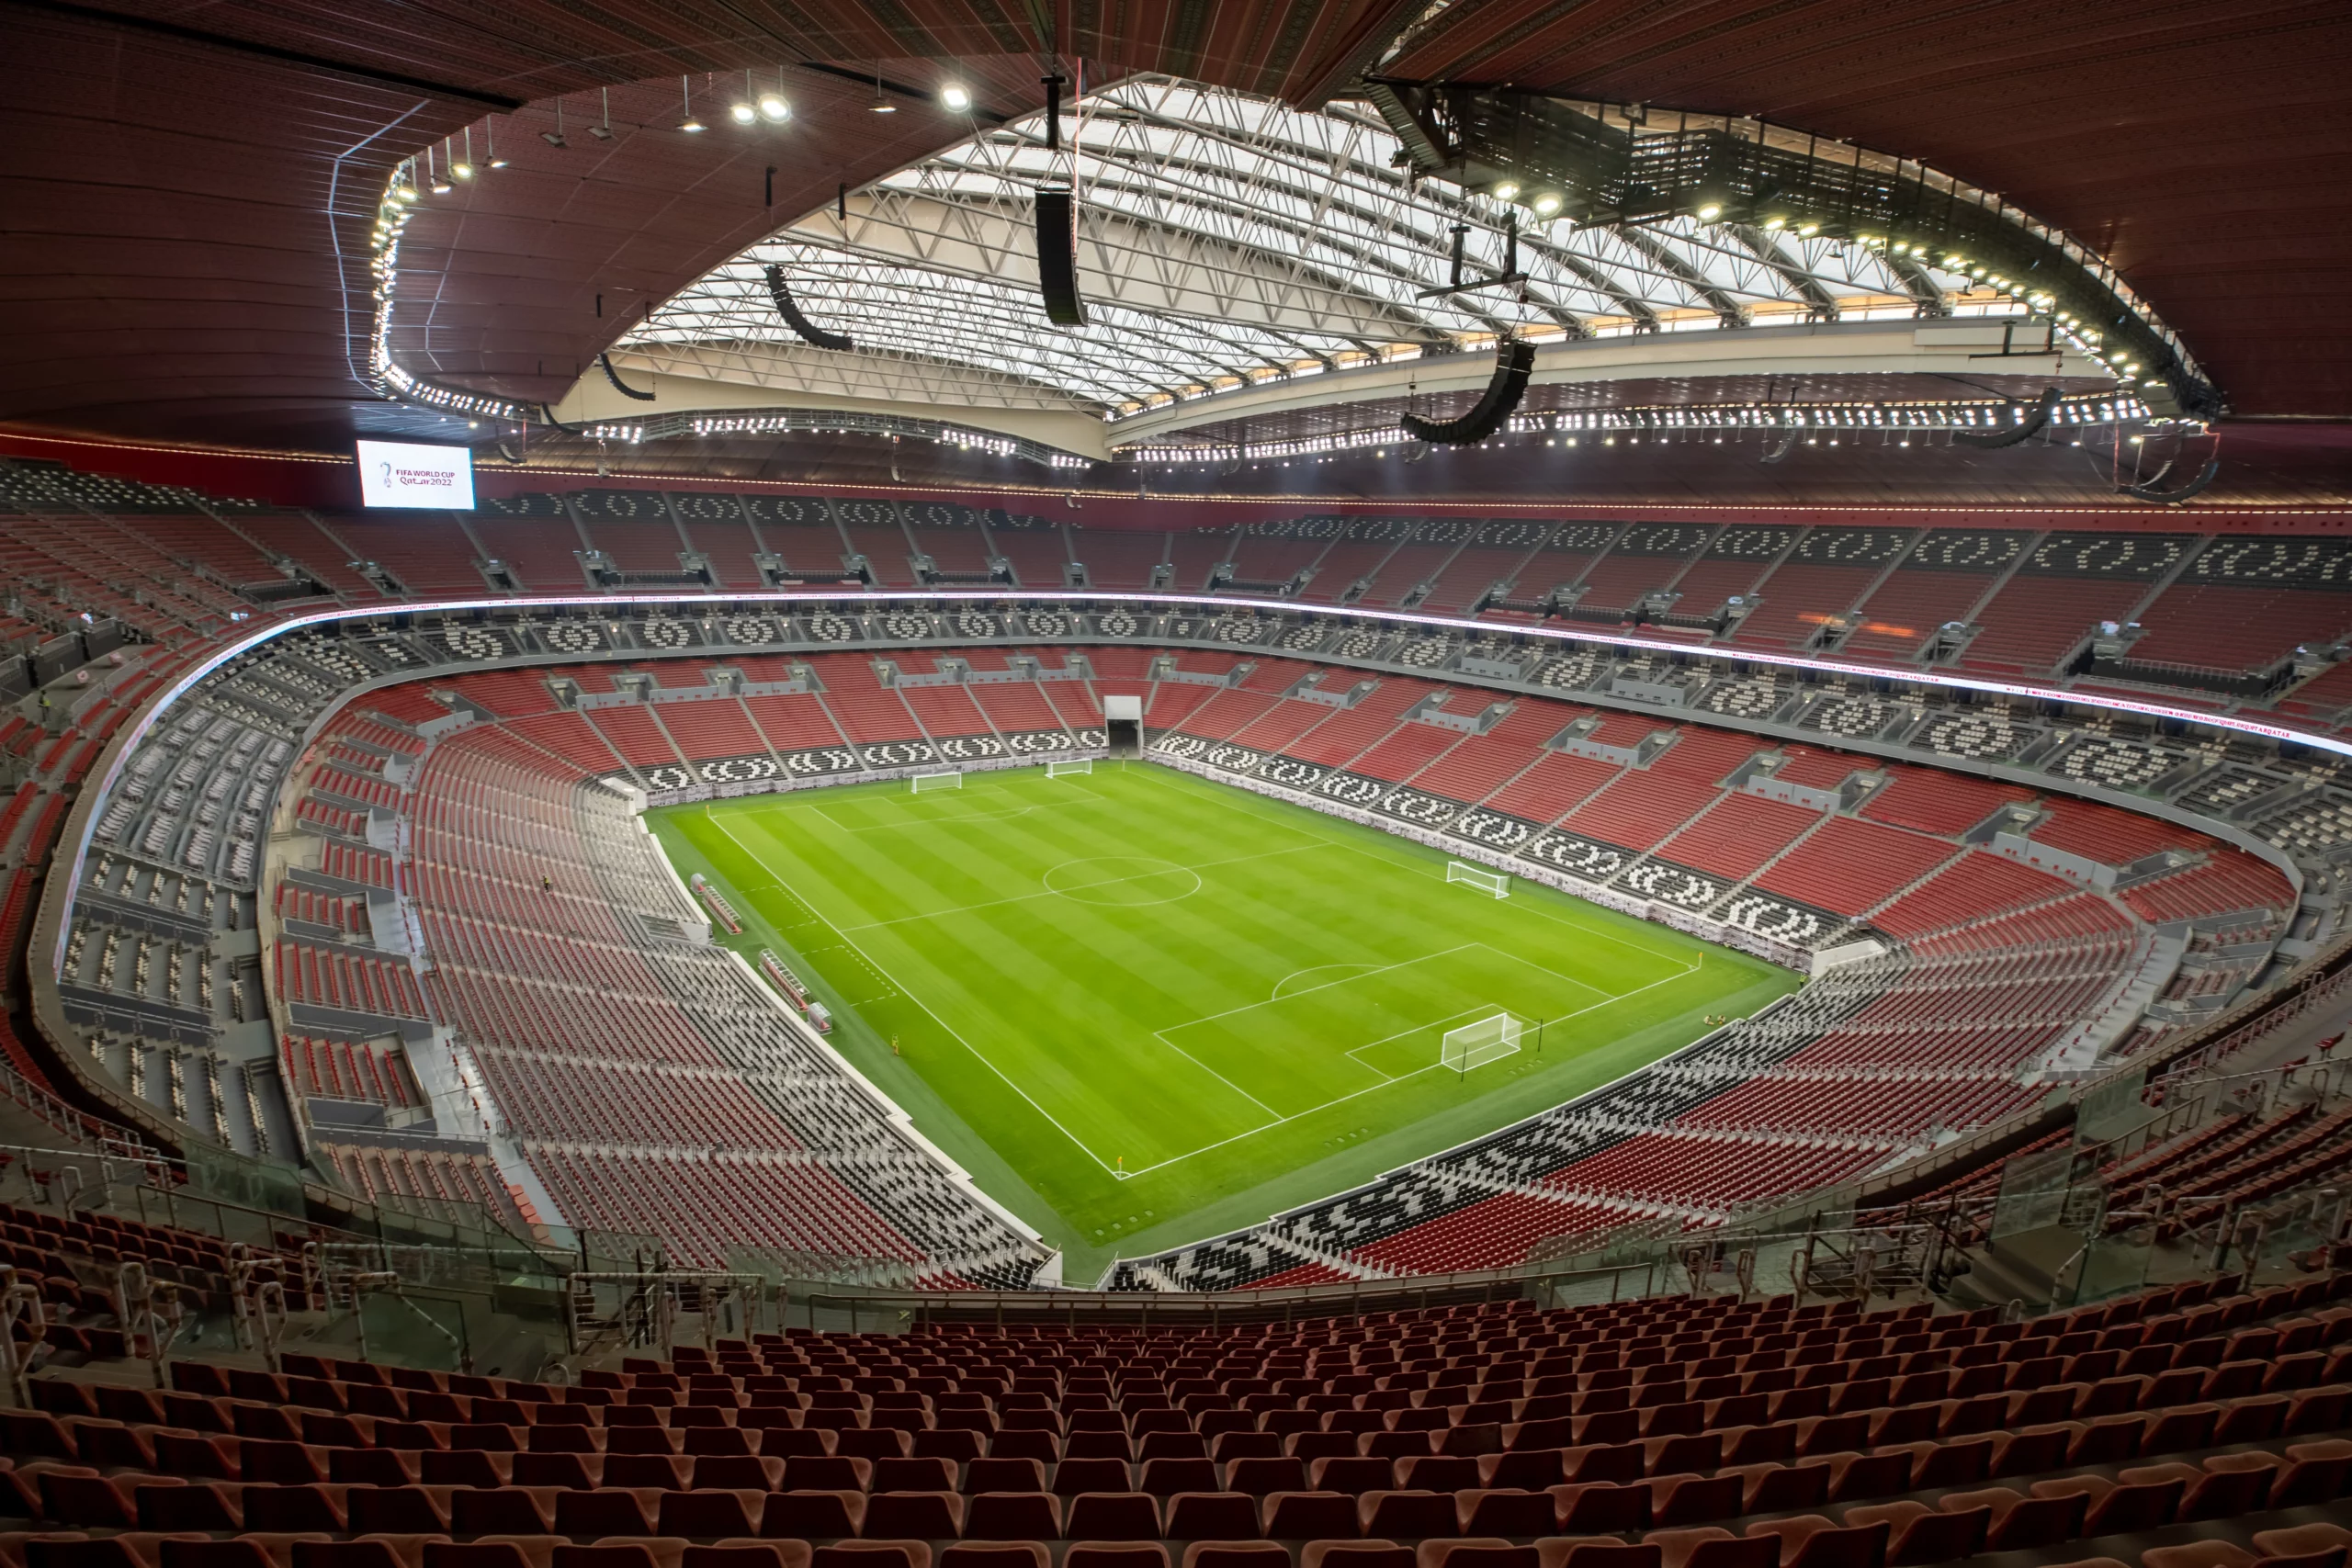 Découvrez les 8 stades magnifiques de la Coupe du monde 2022